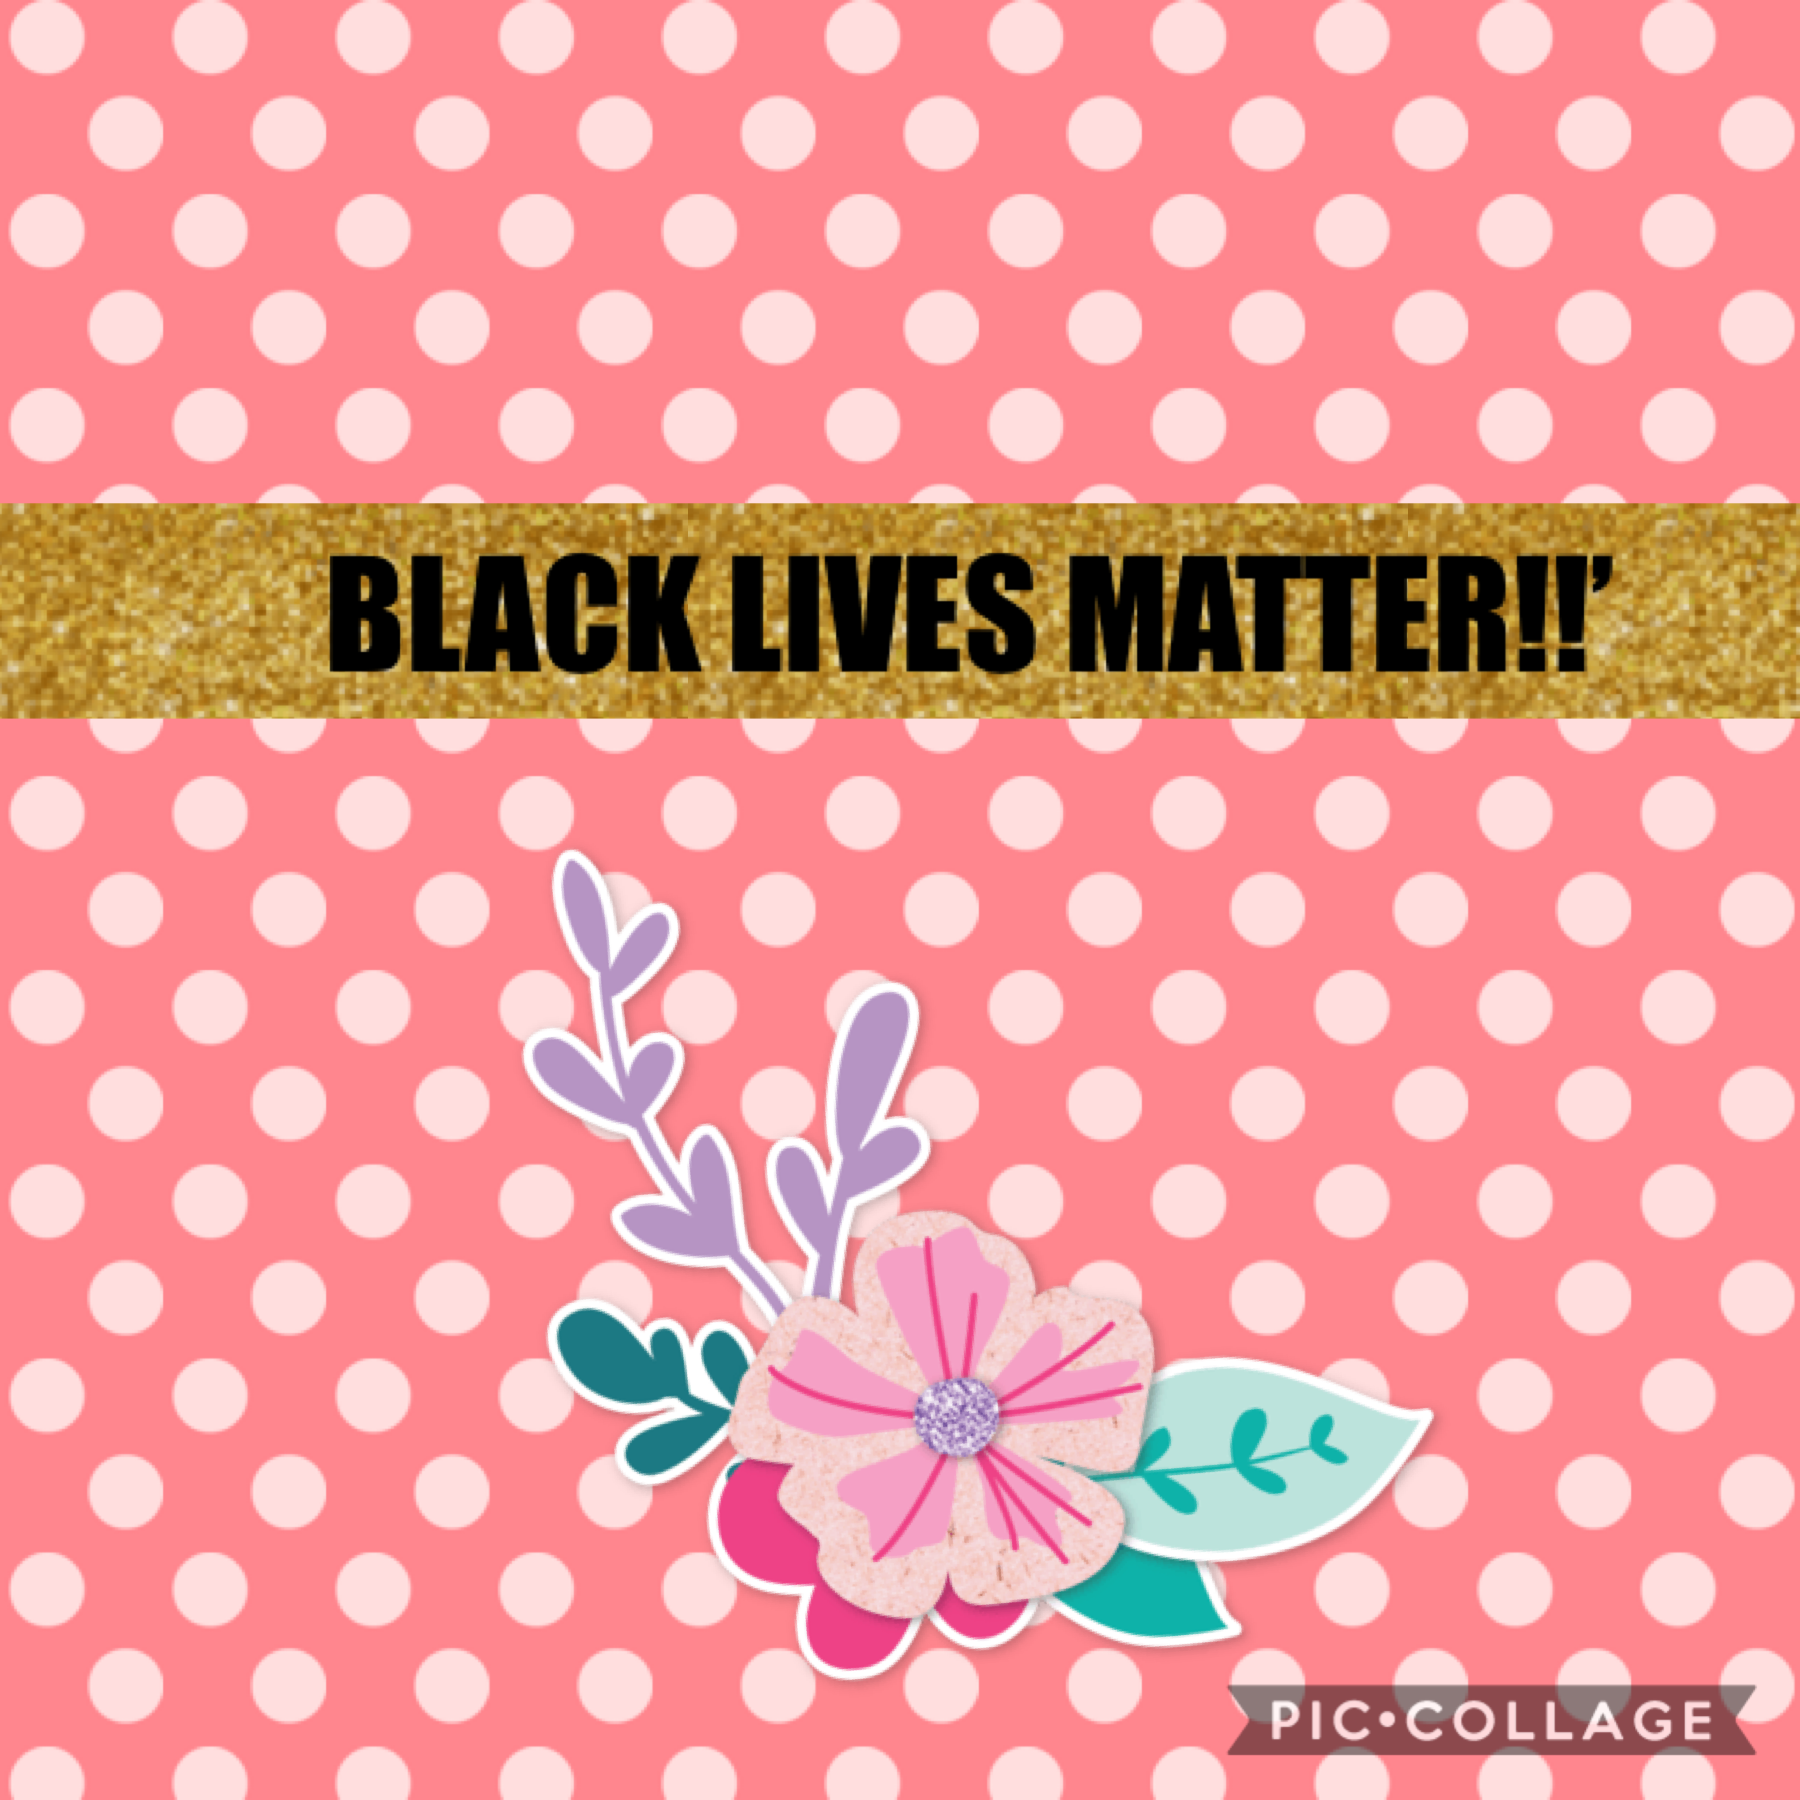 Black lives matter!!!!